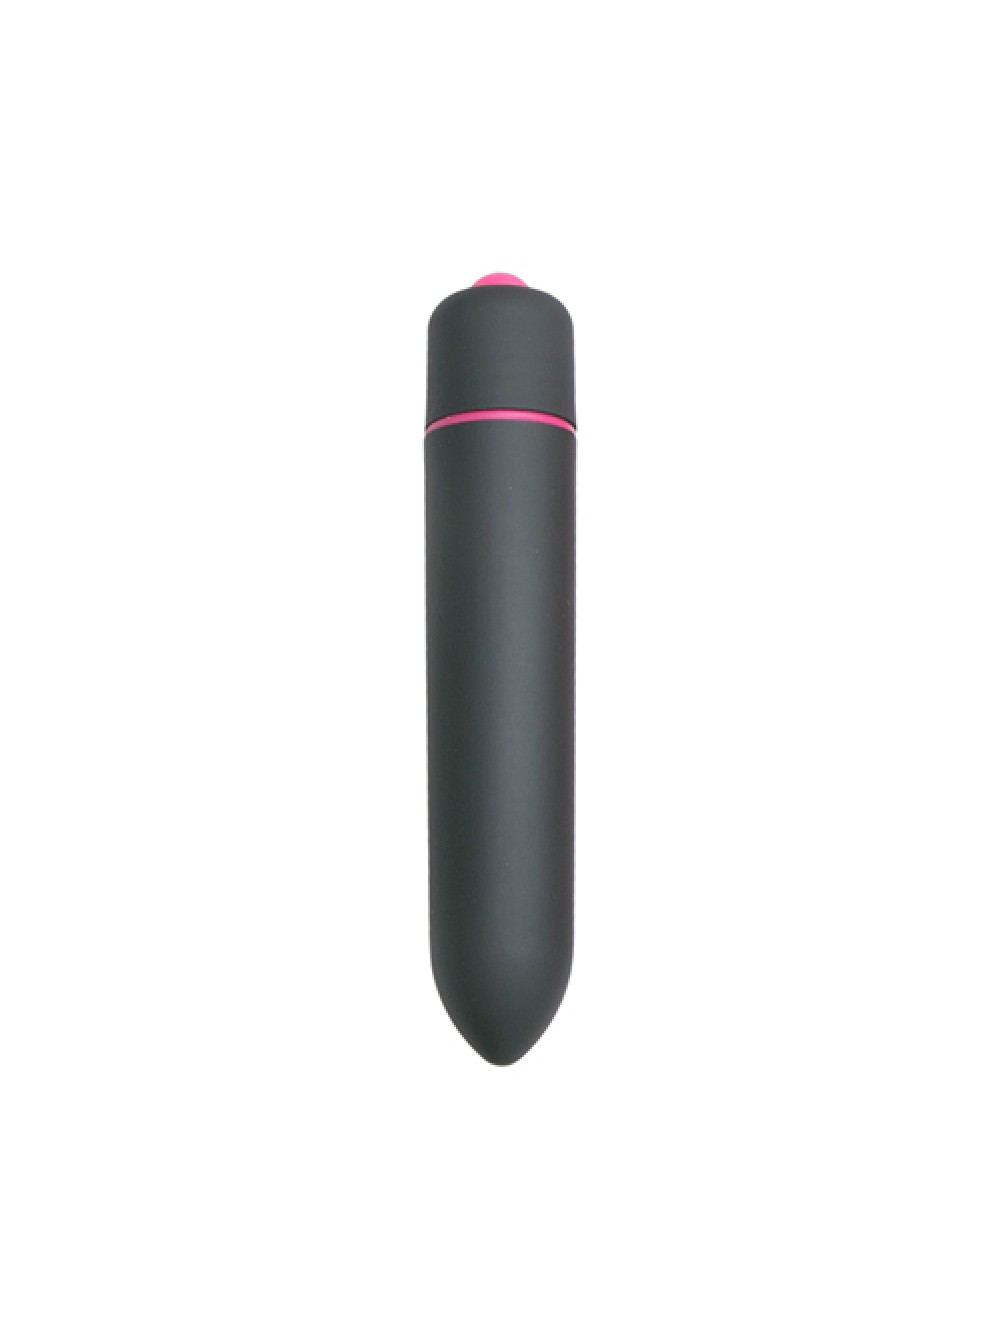 Easytoys 10 Speed Bullet Vibrator - Black 8718627522141